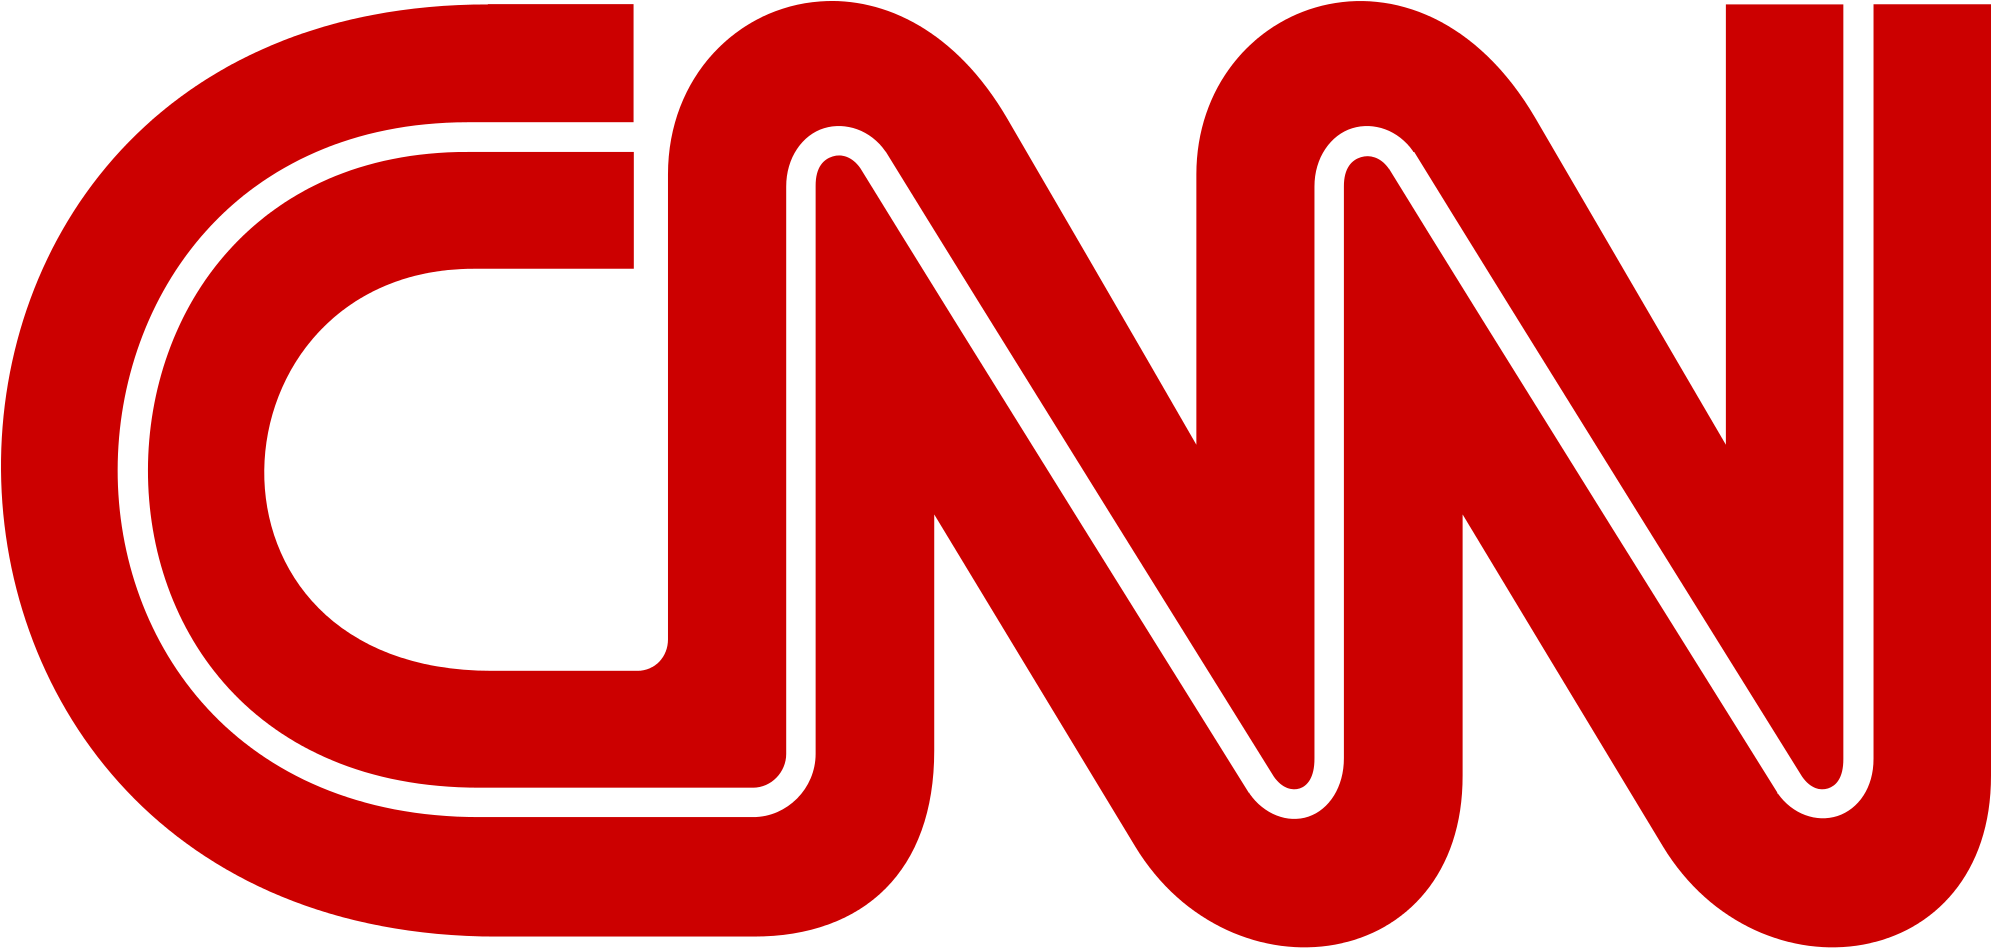 Cnn Lettermark Logo - Cnn Logo Png (2000x960), Png Download